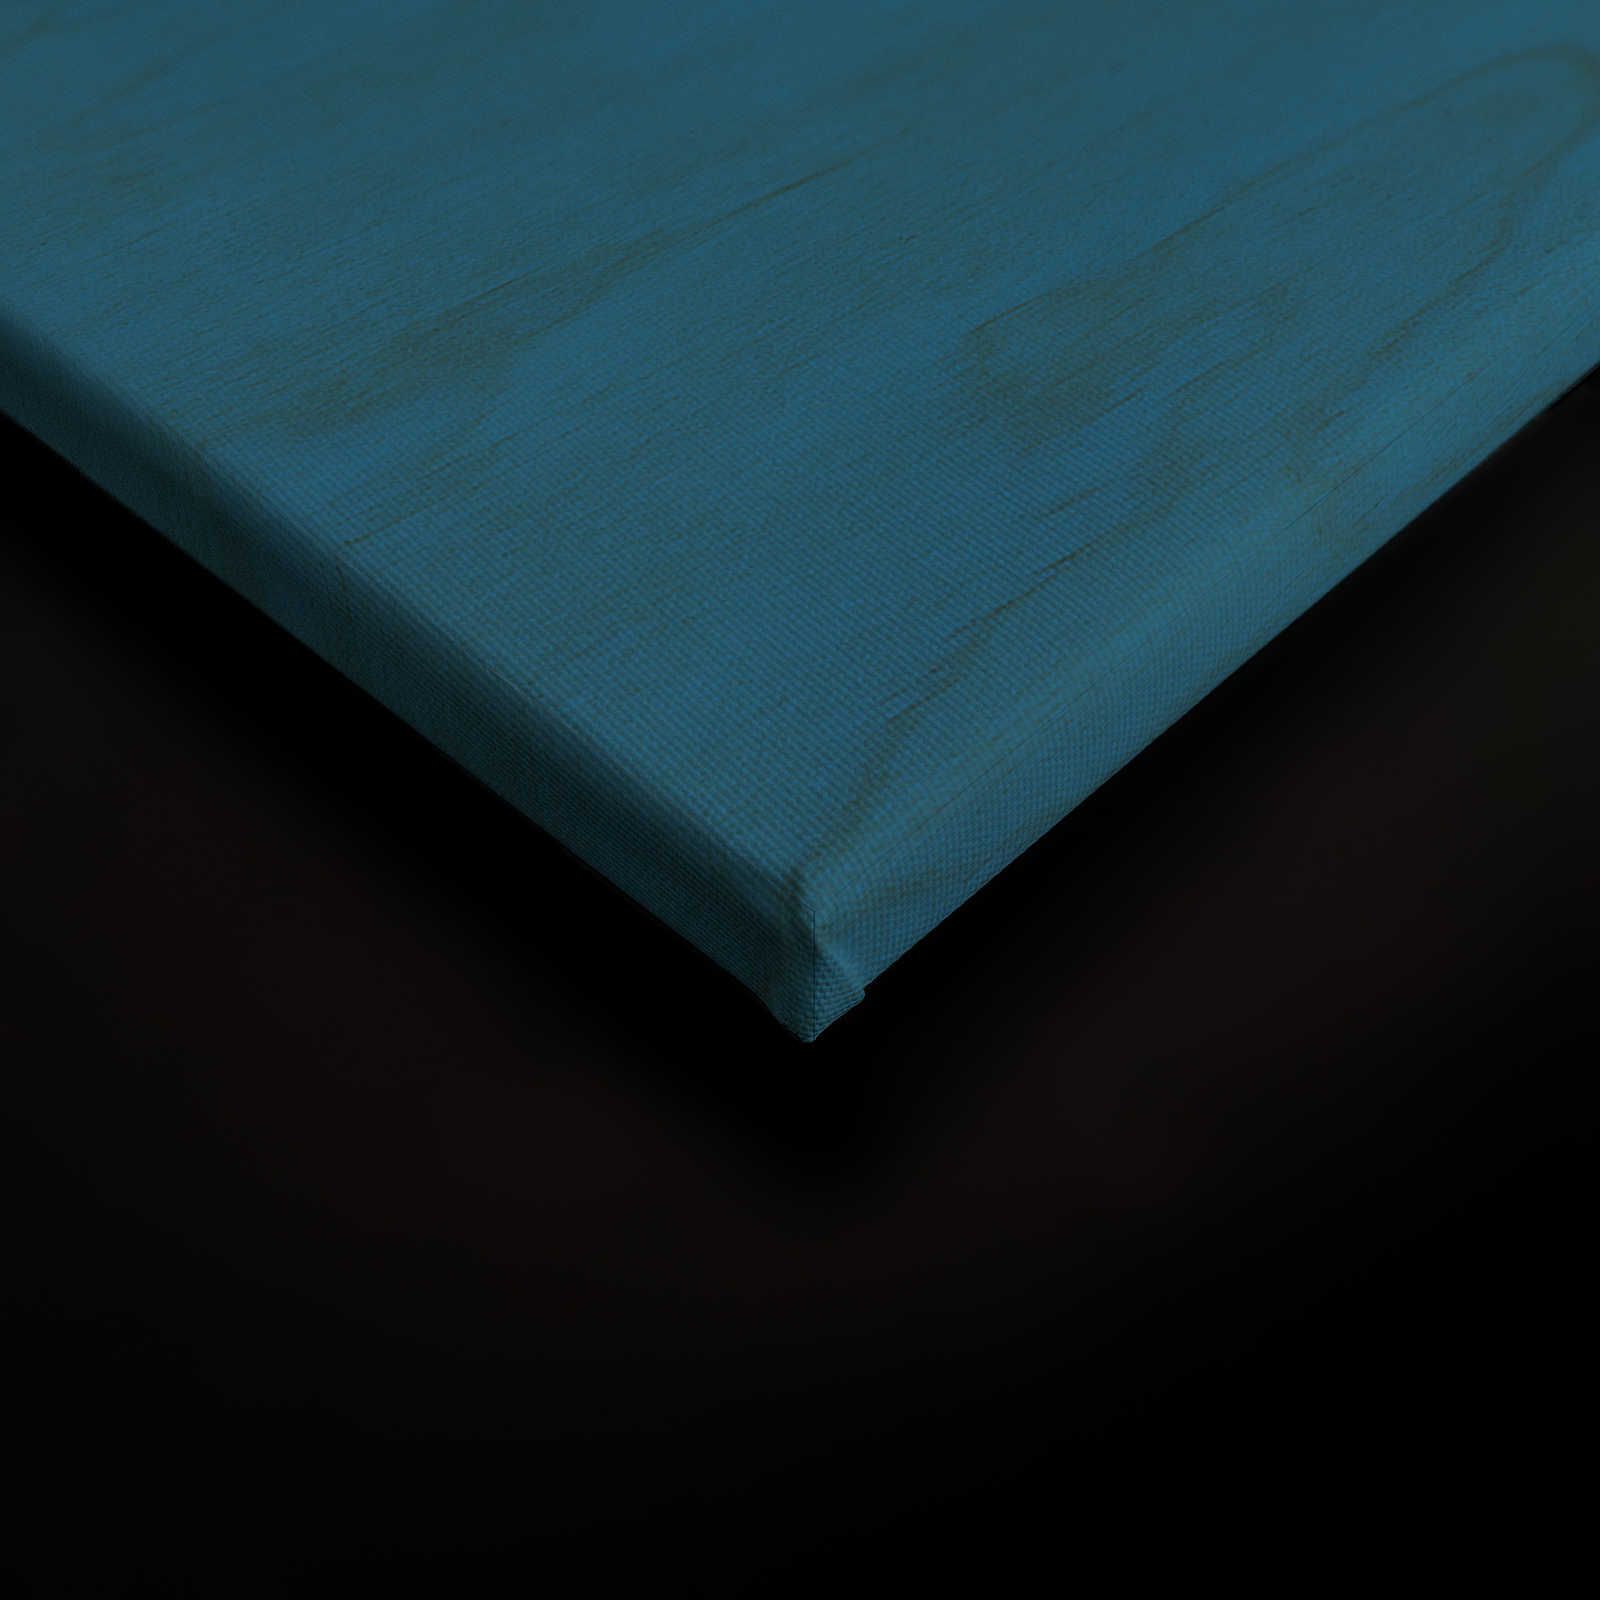             Overseas 3 - Toile bleue design ethnique avec masque - 1,20 m x 0,80 m
        